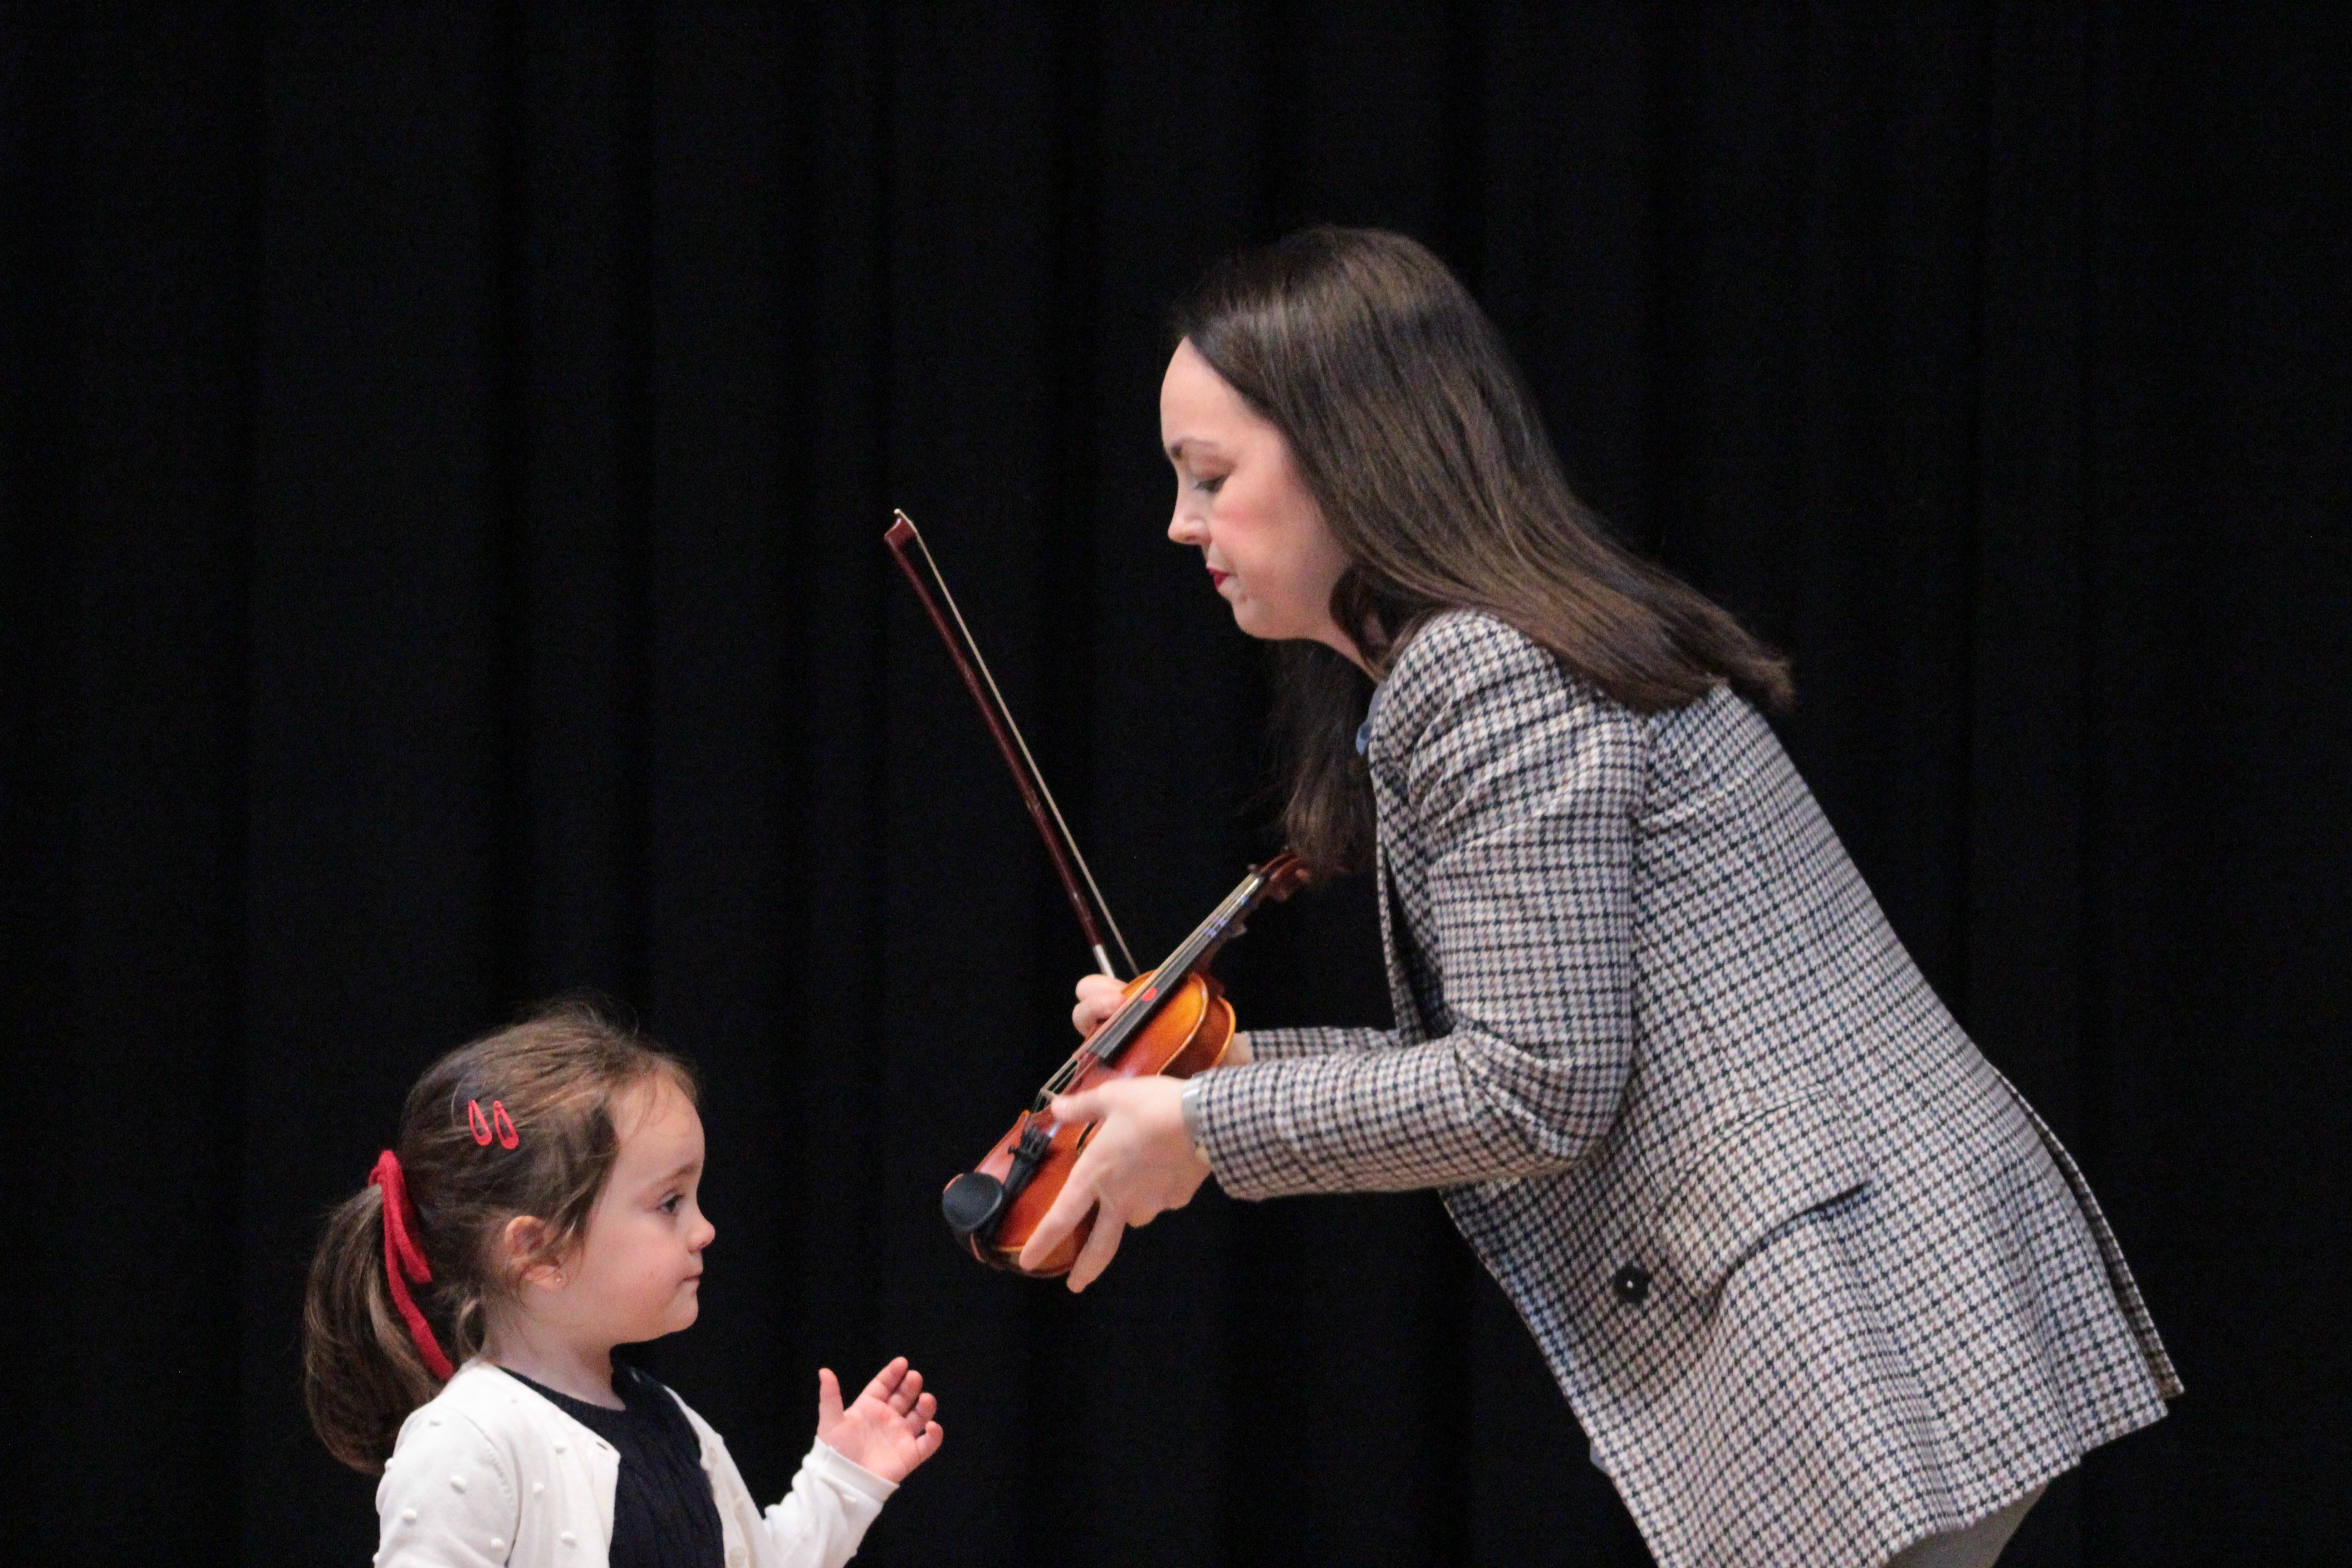 Profesora ayudando a una alumna muy pequeña a colocar correctamente el violín sobre el hombro.